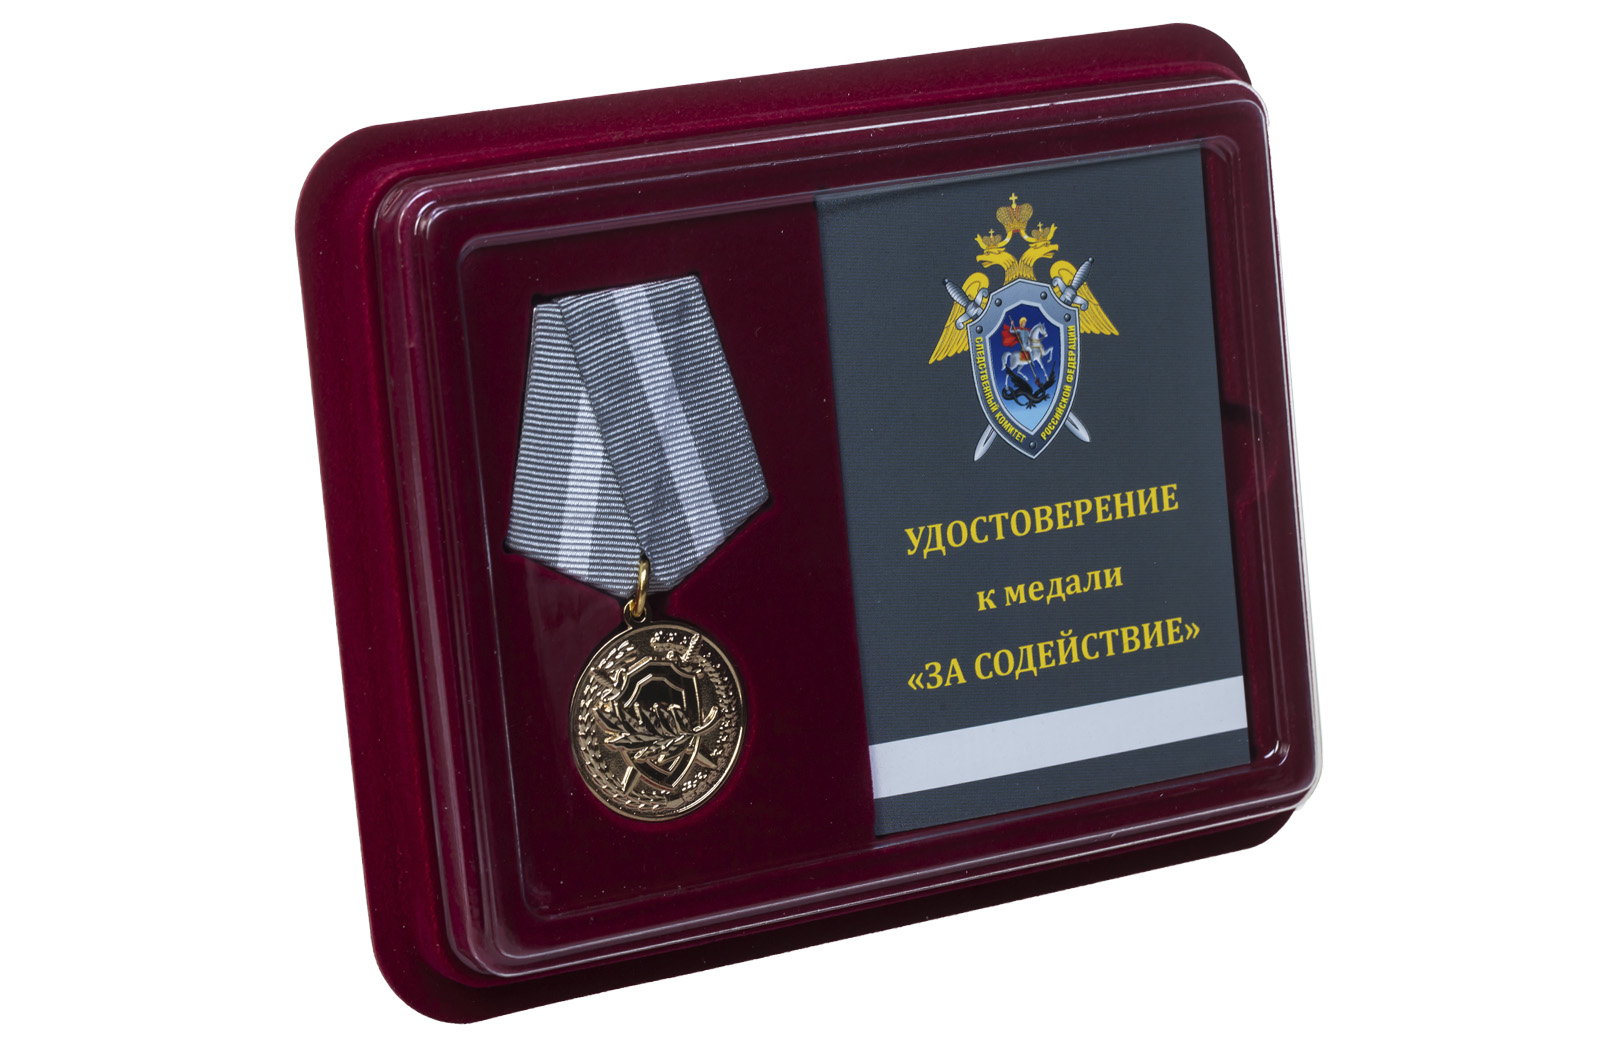 Жительница Костромской области награждена медалью Следственного комитета «За содействие» 